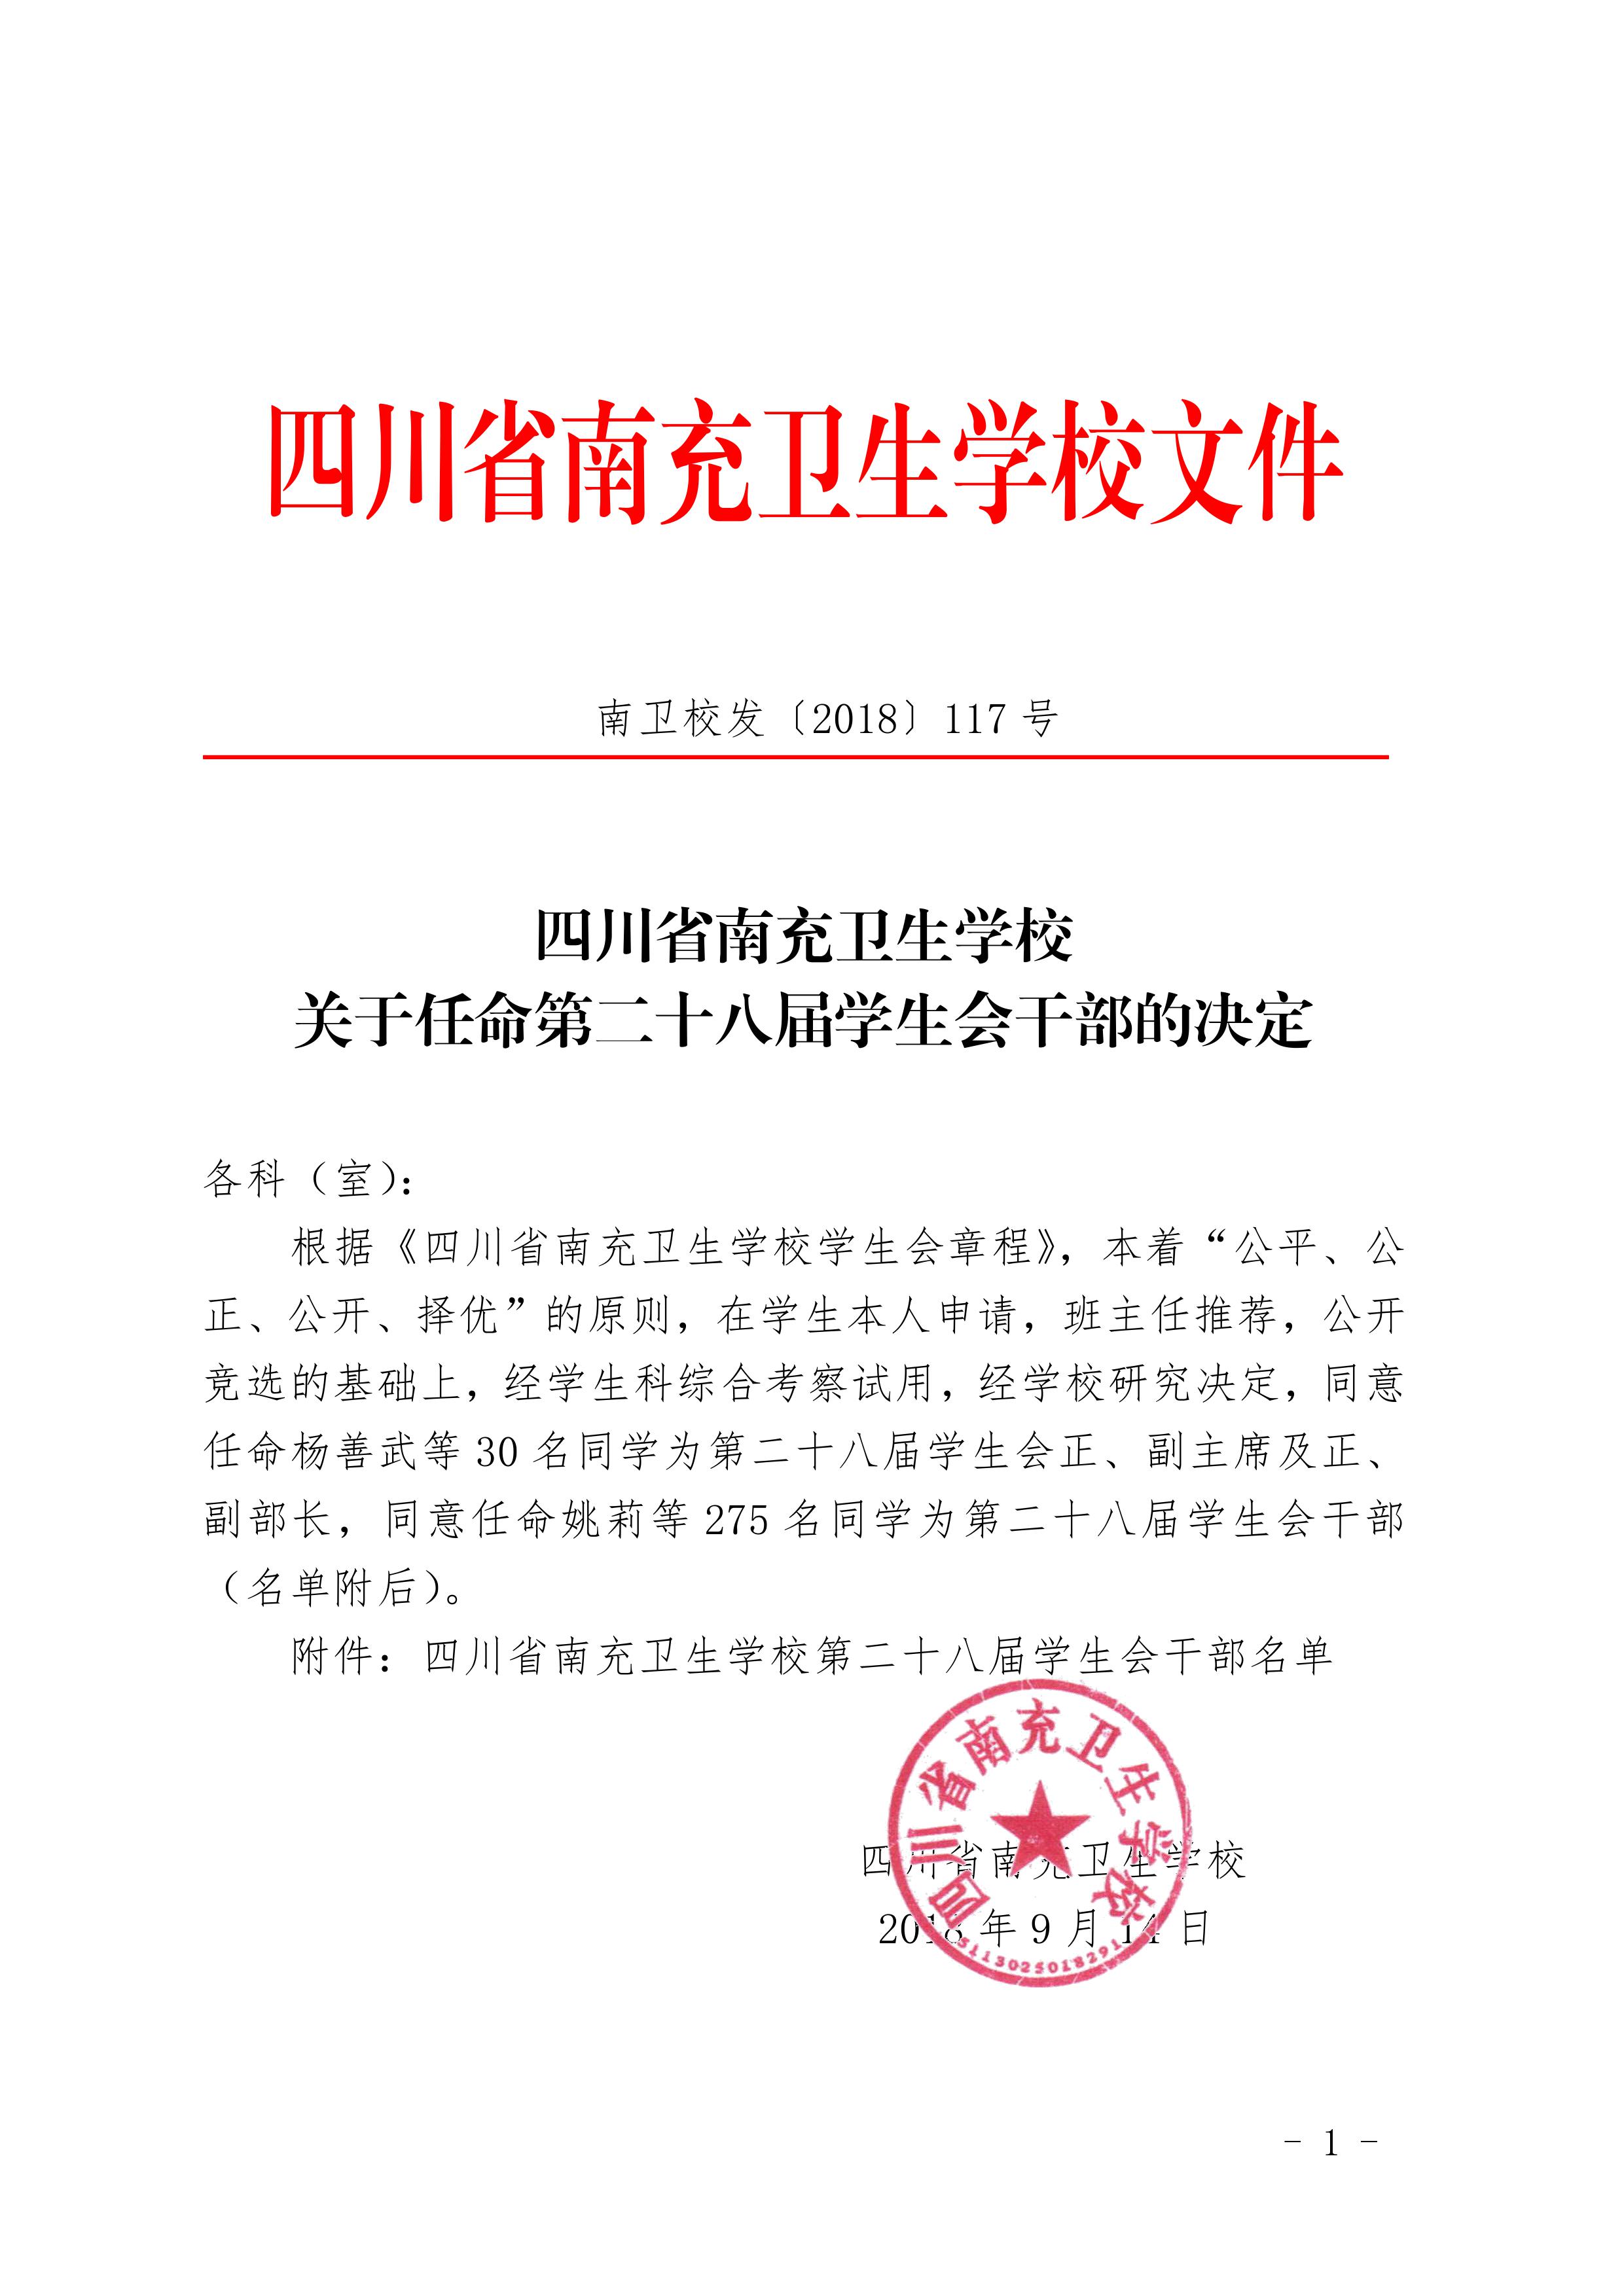 四川省南充卫生学校 关于任命第二十八届学生会干部的决定